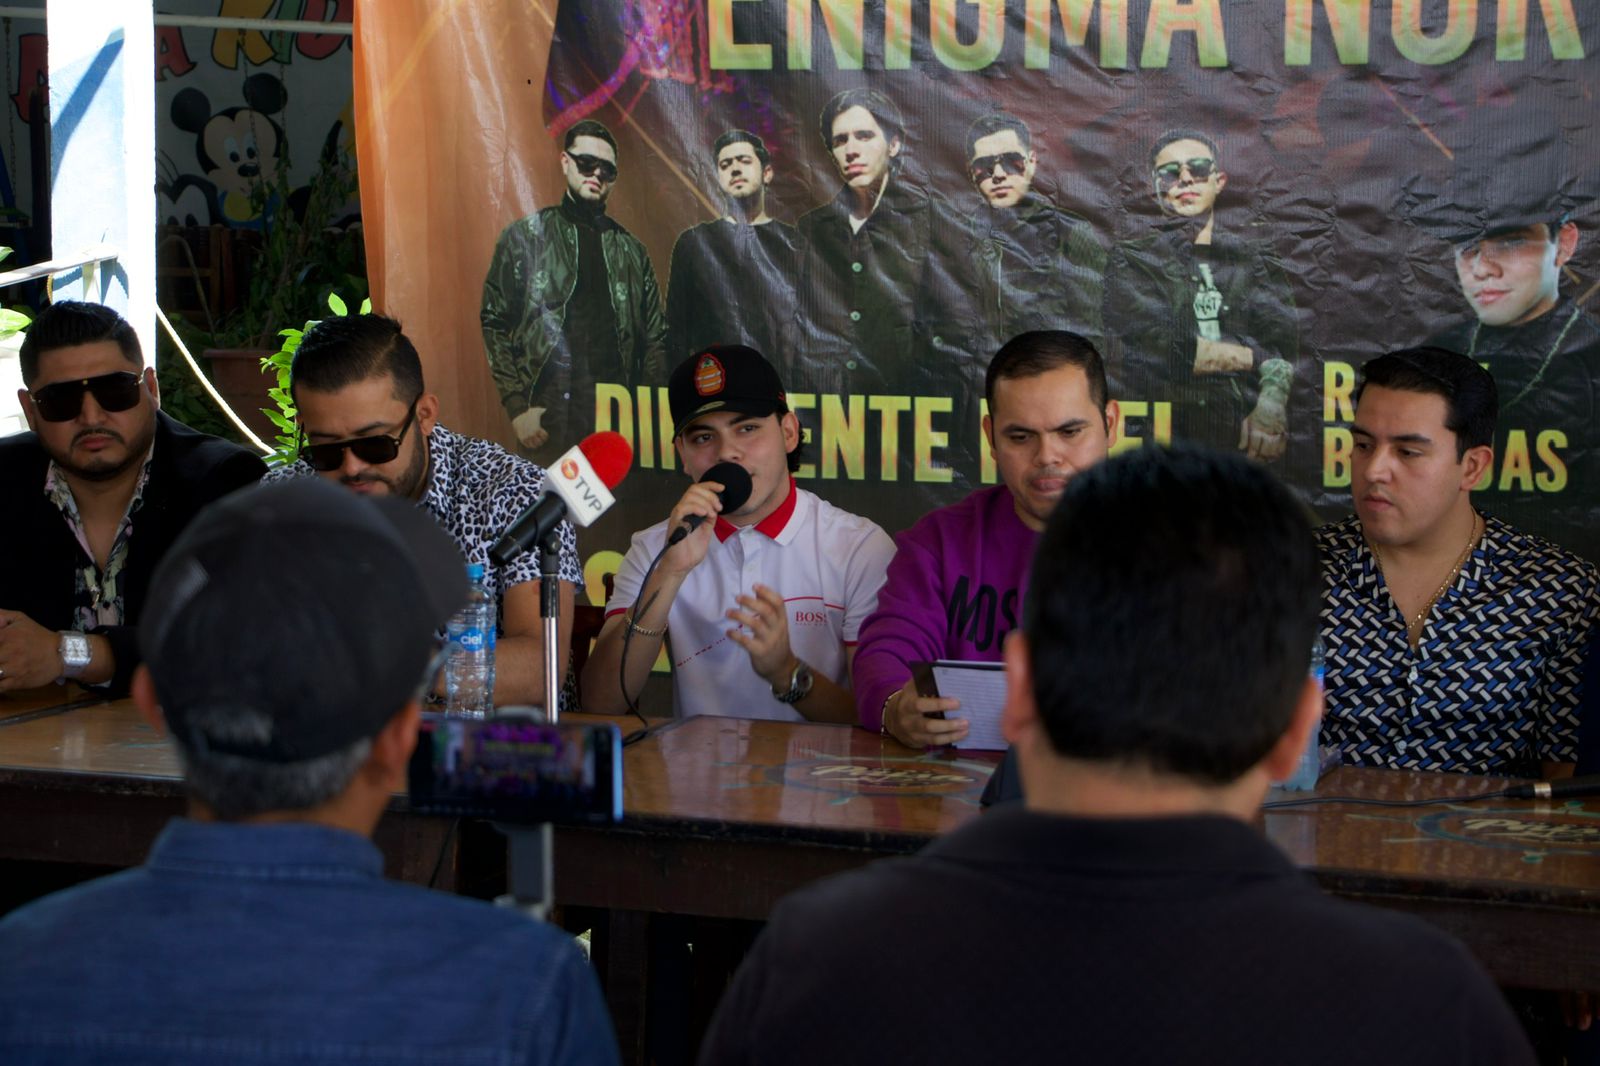 El grupo Enigma Norteño invita a celebrar su décimo aniversario, en Culiacán.